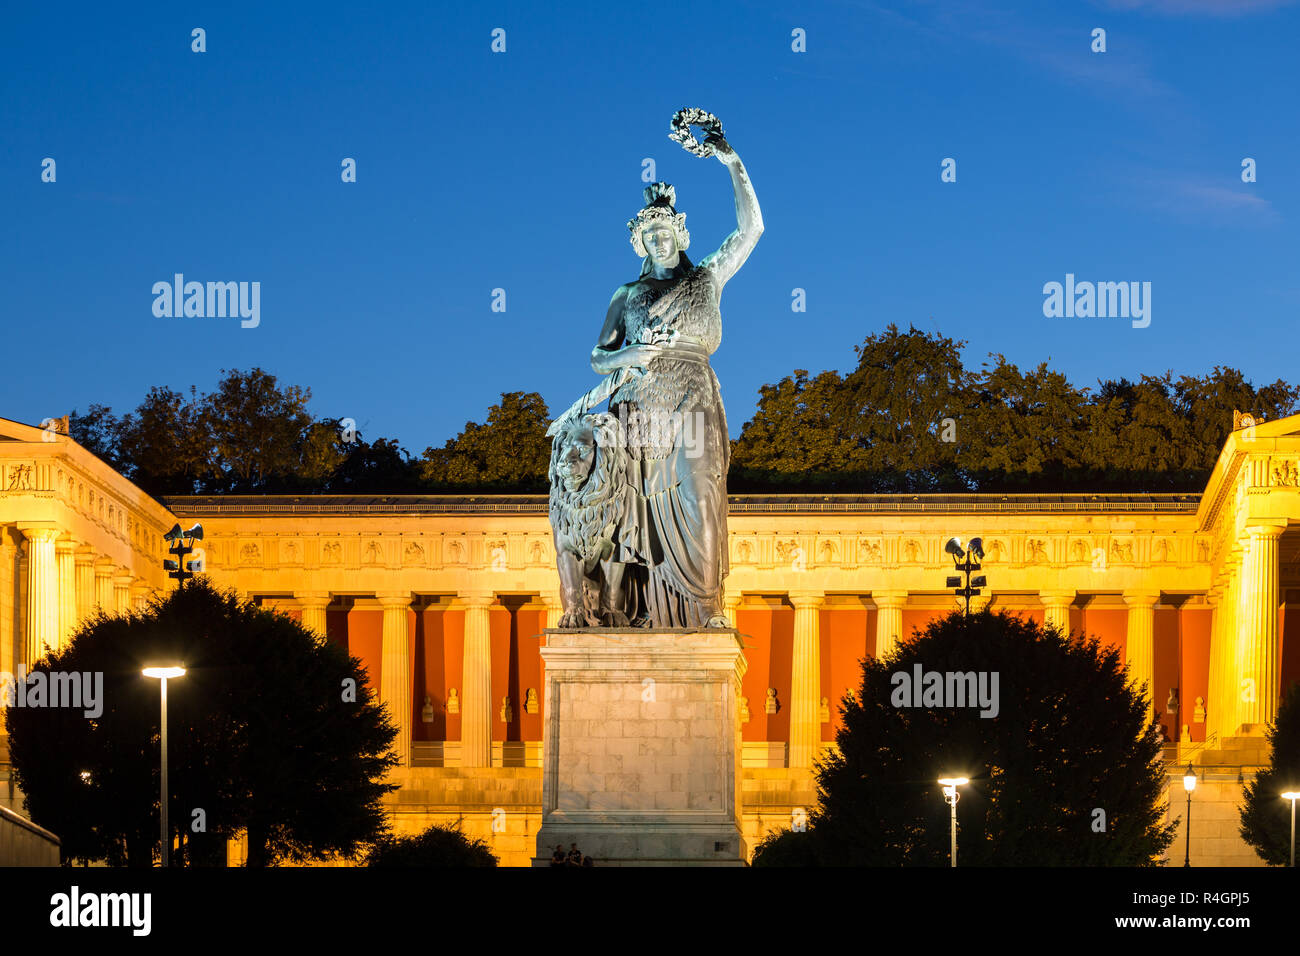 Statue en bronze la Bavière en face du Hall of Fame, crépuscule, Theresienwiese, Munich, Allemagne Banque D'Images